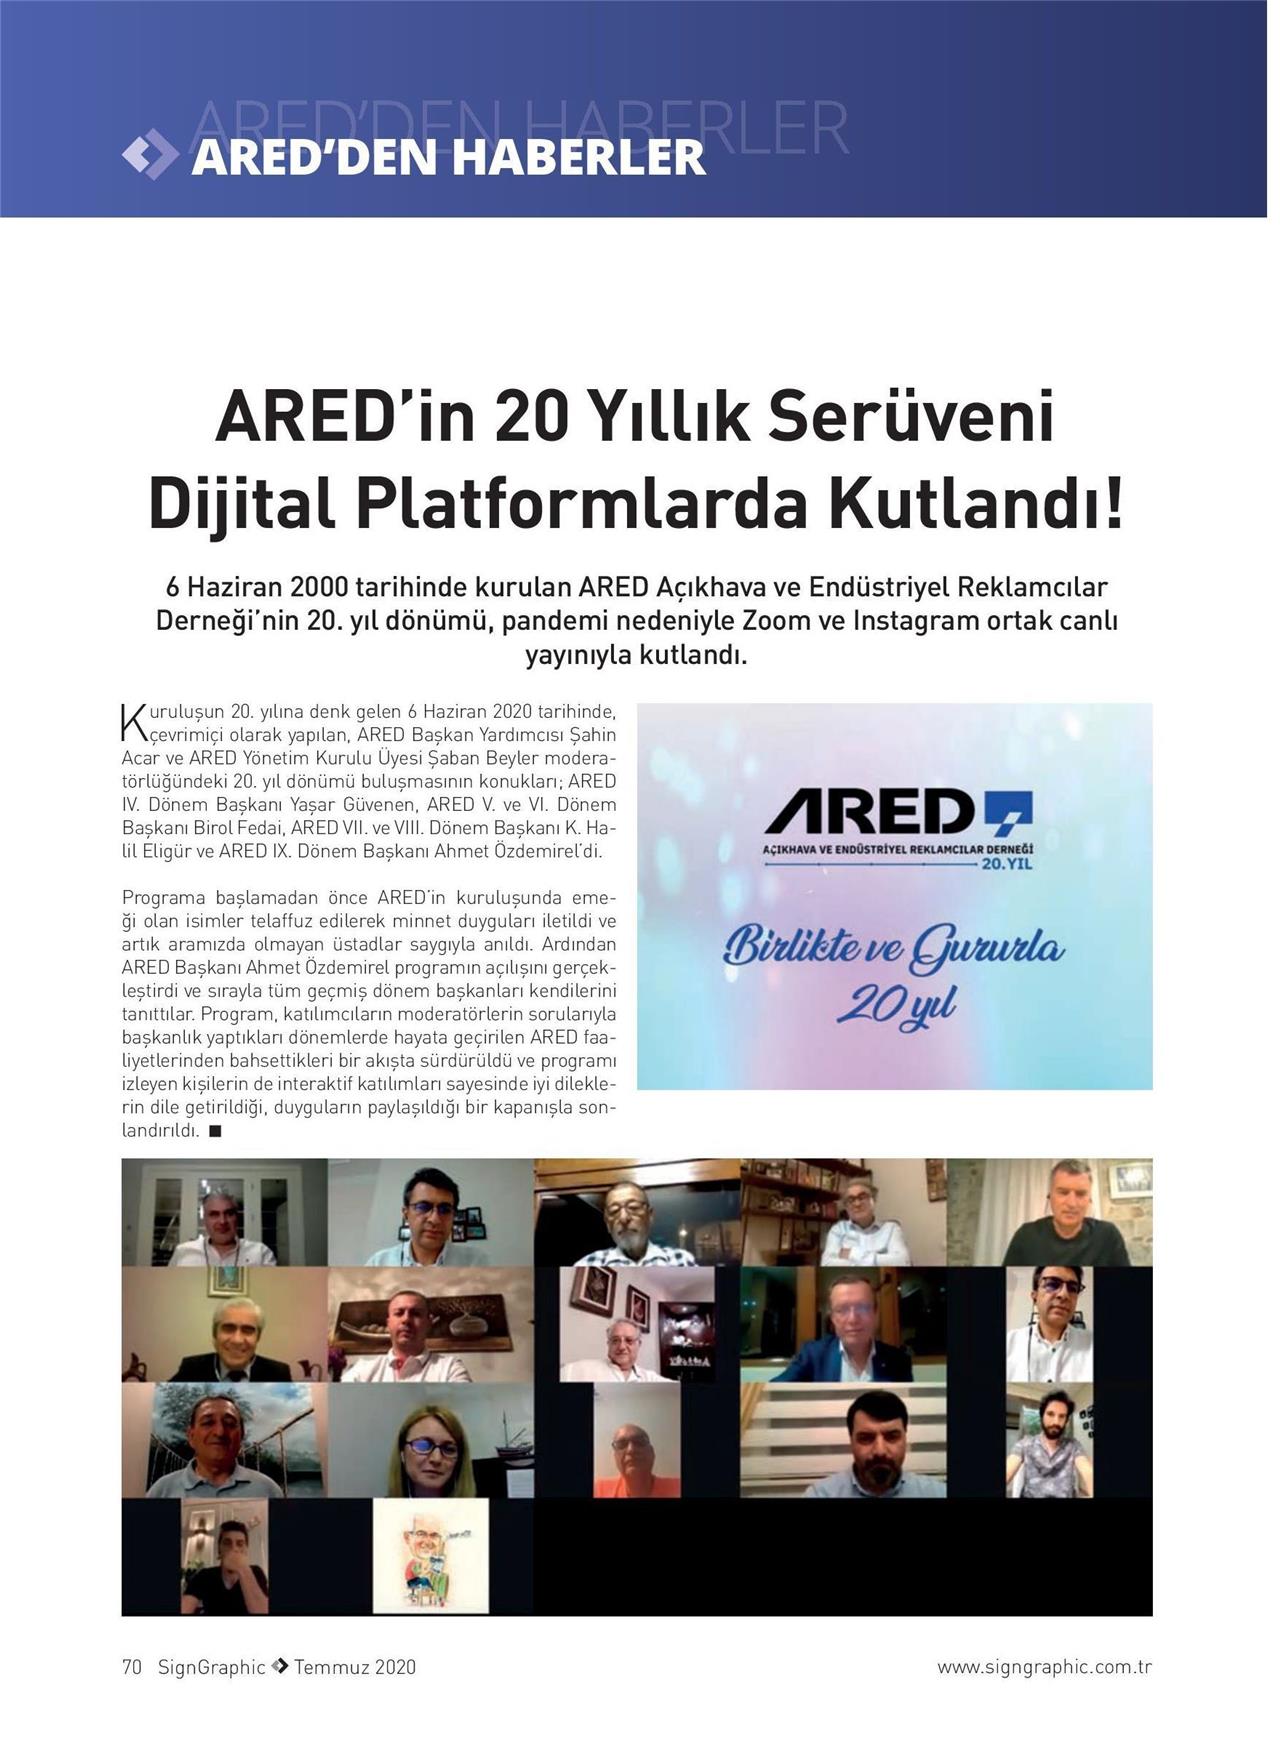 ARED'in 20 Yıllık Serüveni Dijital Platformlarda Kutlandı!